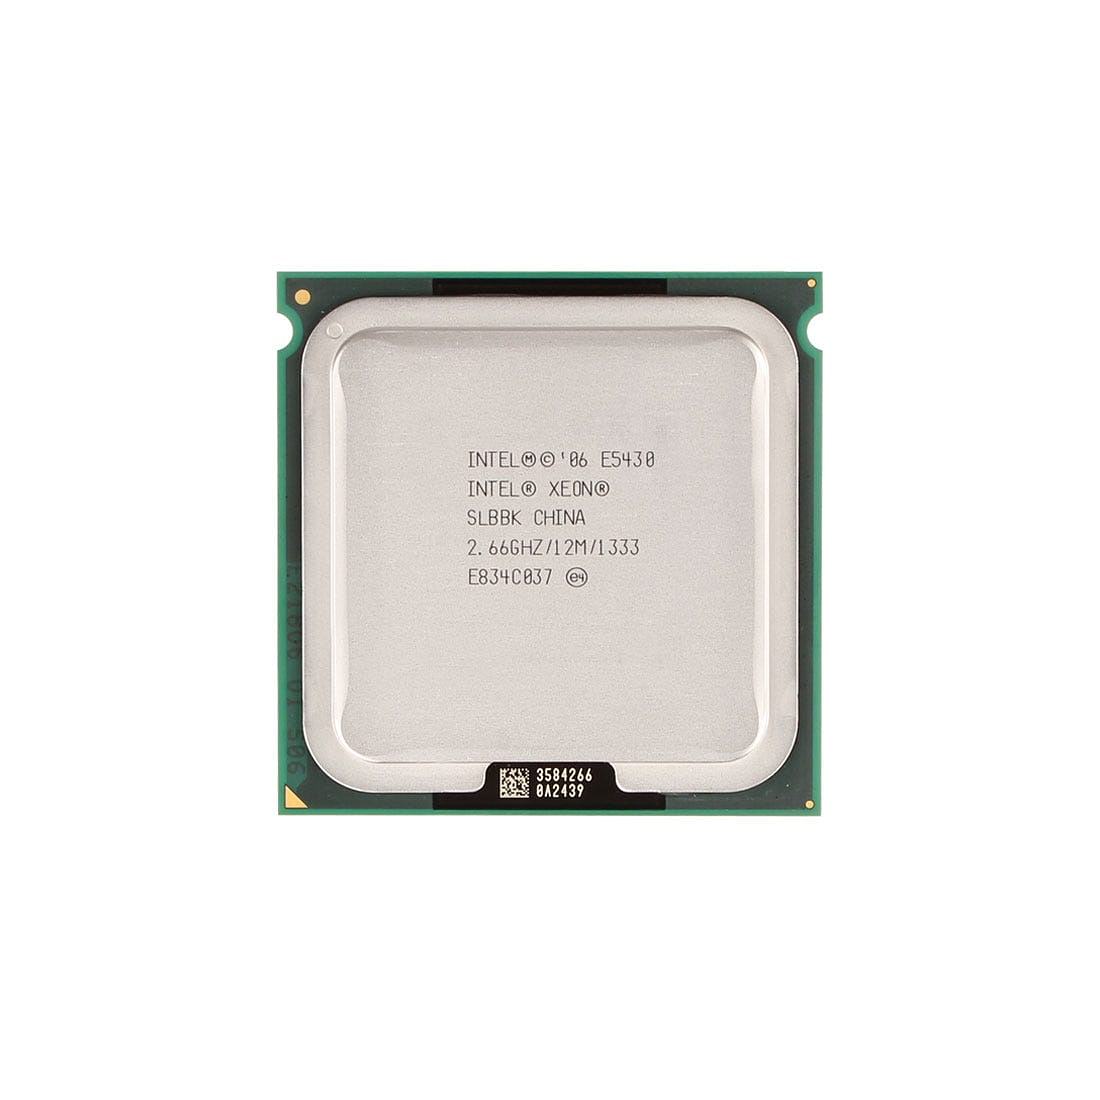 

Intel Xeon Processor E5430